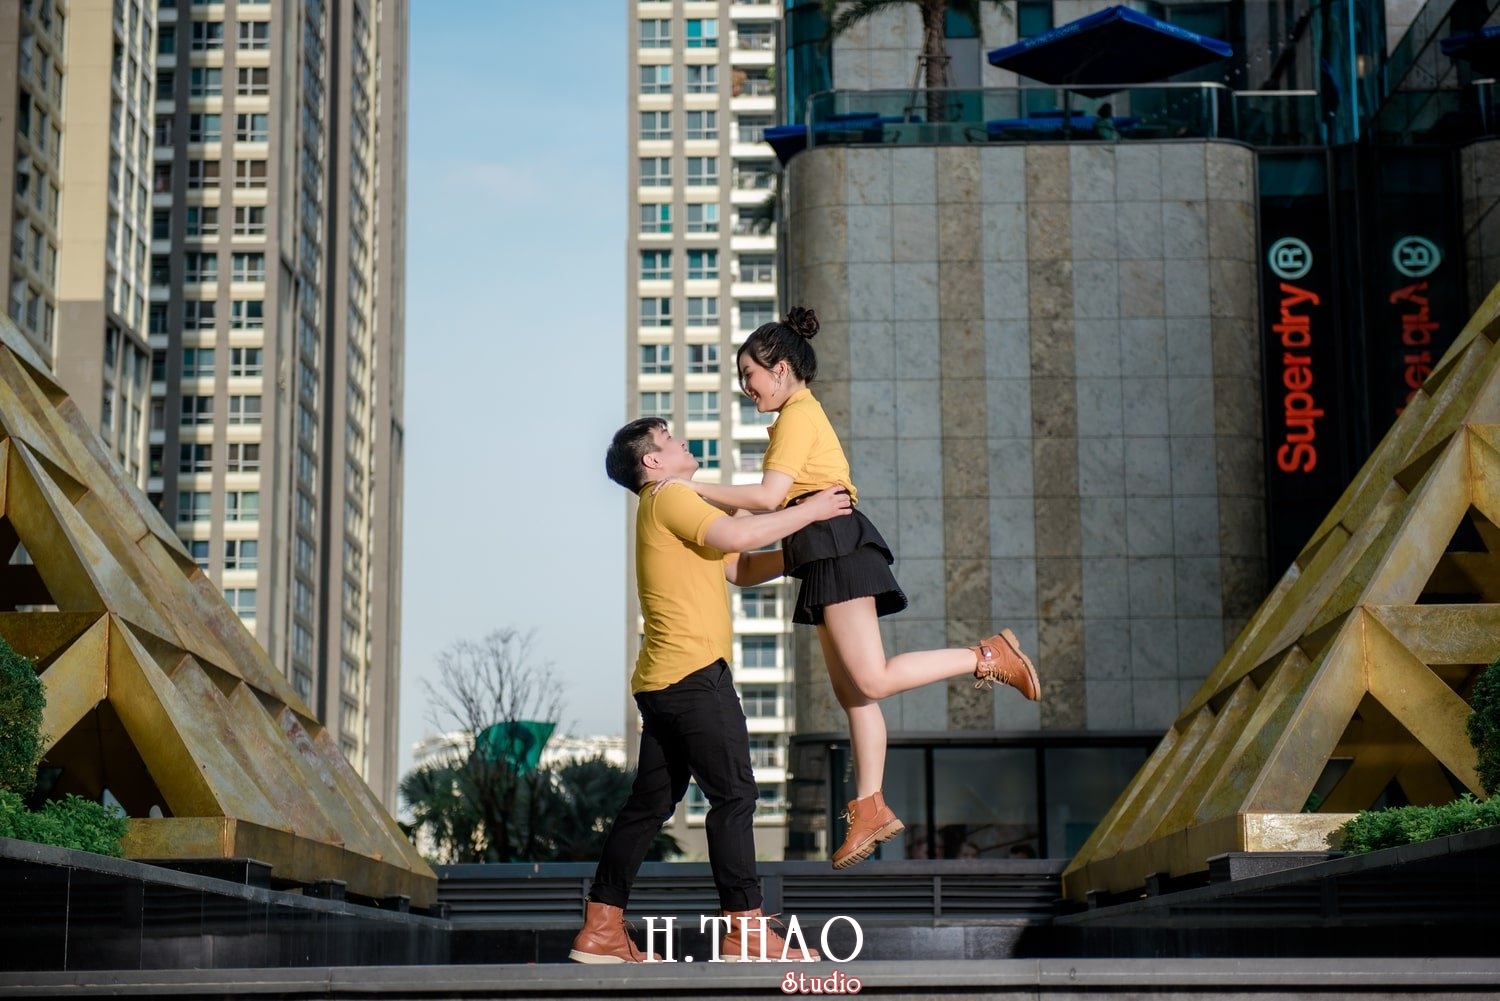 Couple Hai Hang 3 - 3 concept chụp ảnh với người yêu đẹp mà chất - HThao Studio